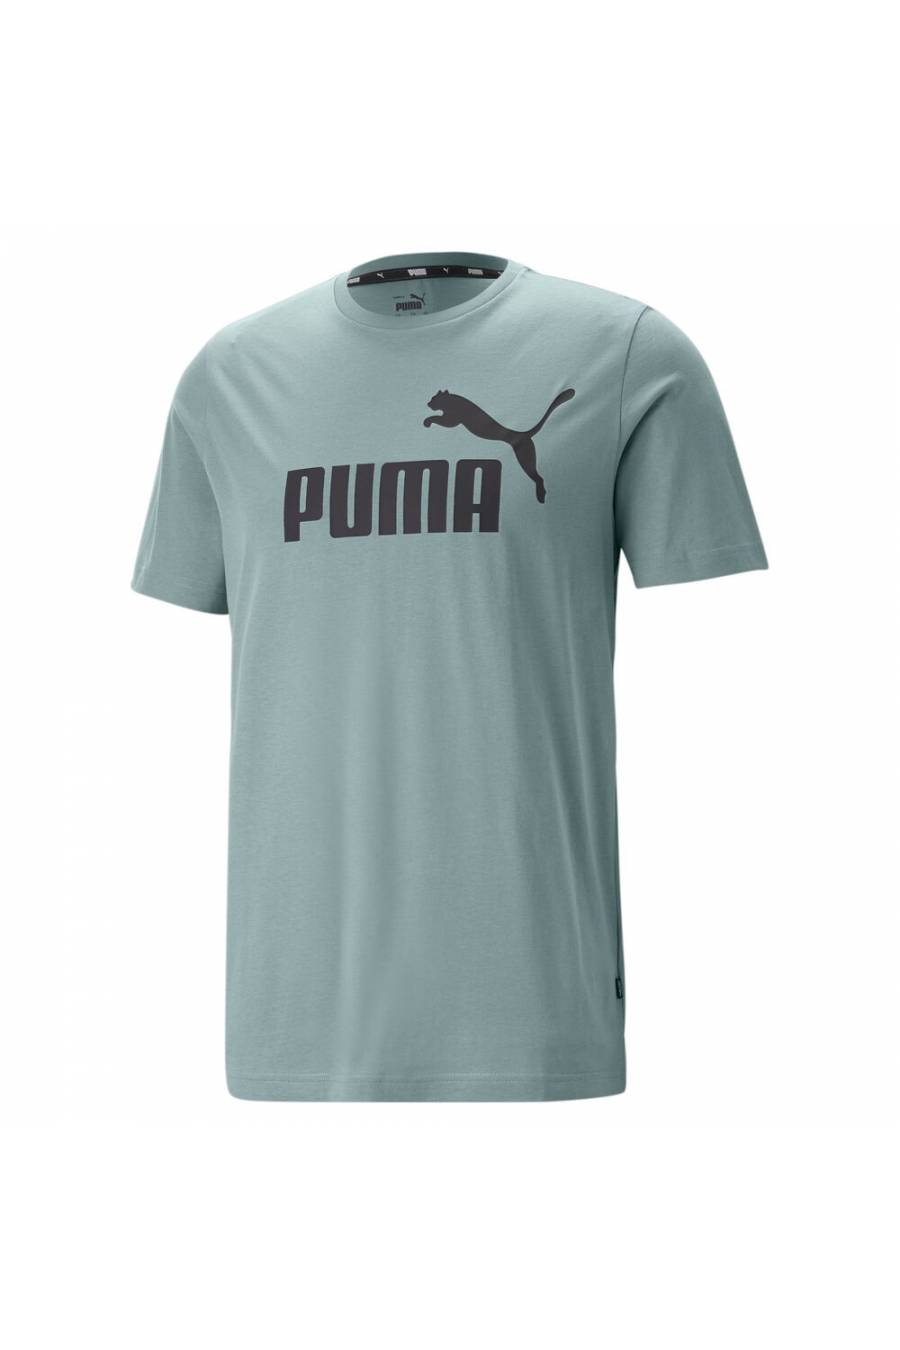 Camiseta Puma Essentials Logo 586667-75